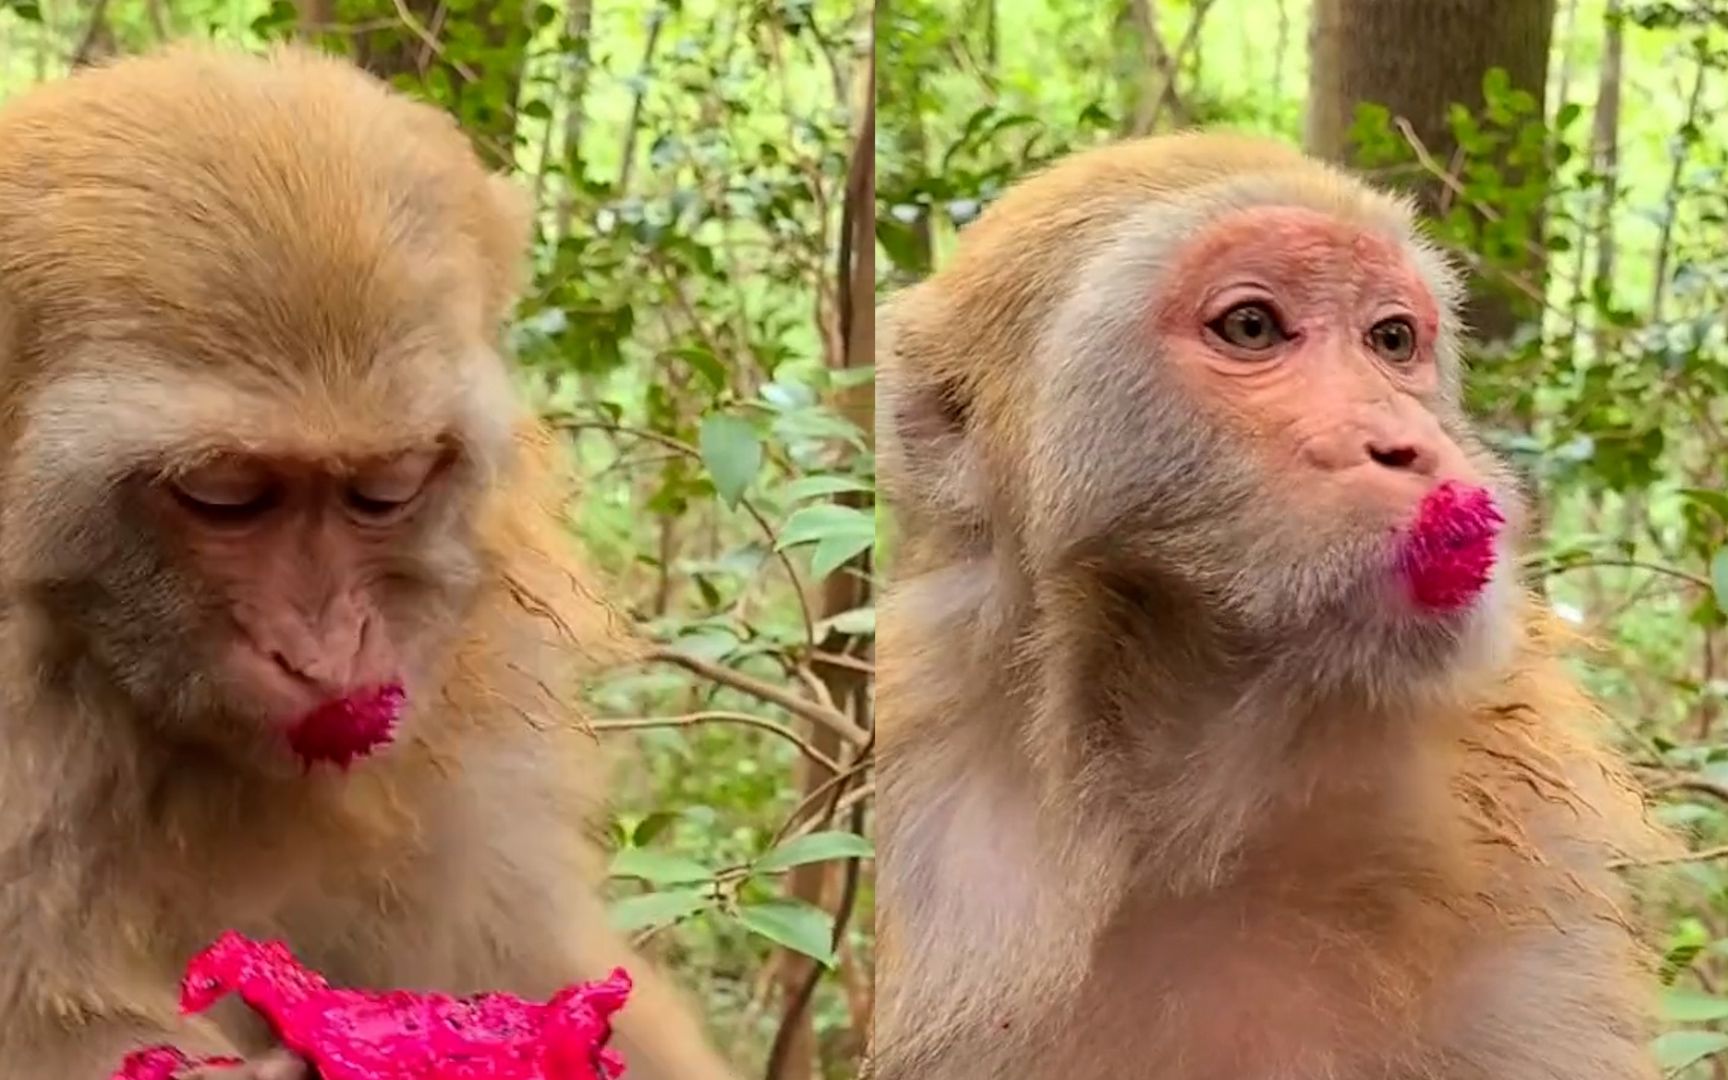 猴子吃红心火龙果,一个举动逗笑众多游客:烈焰红唇!